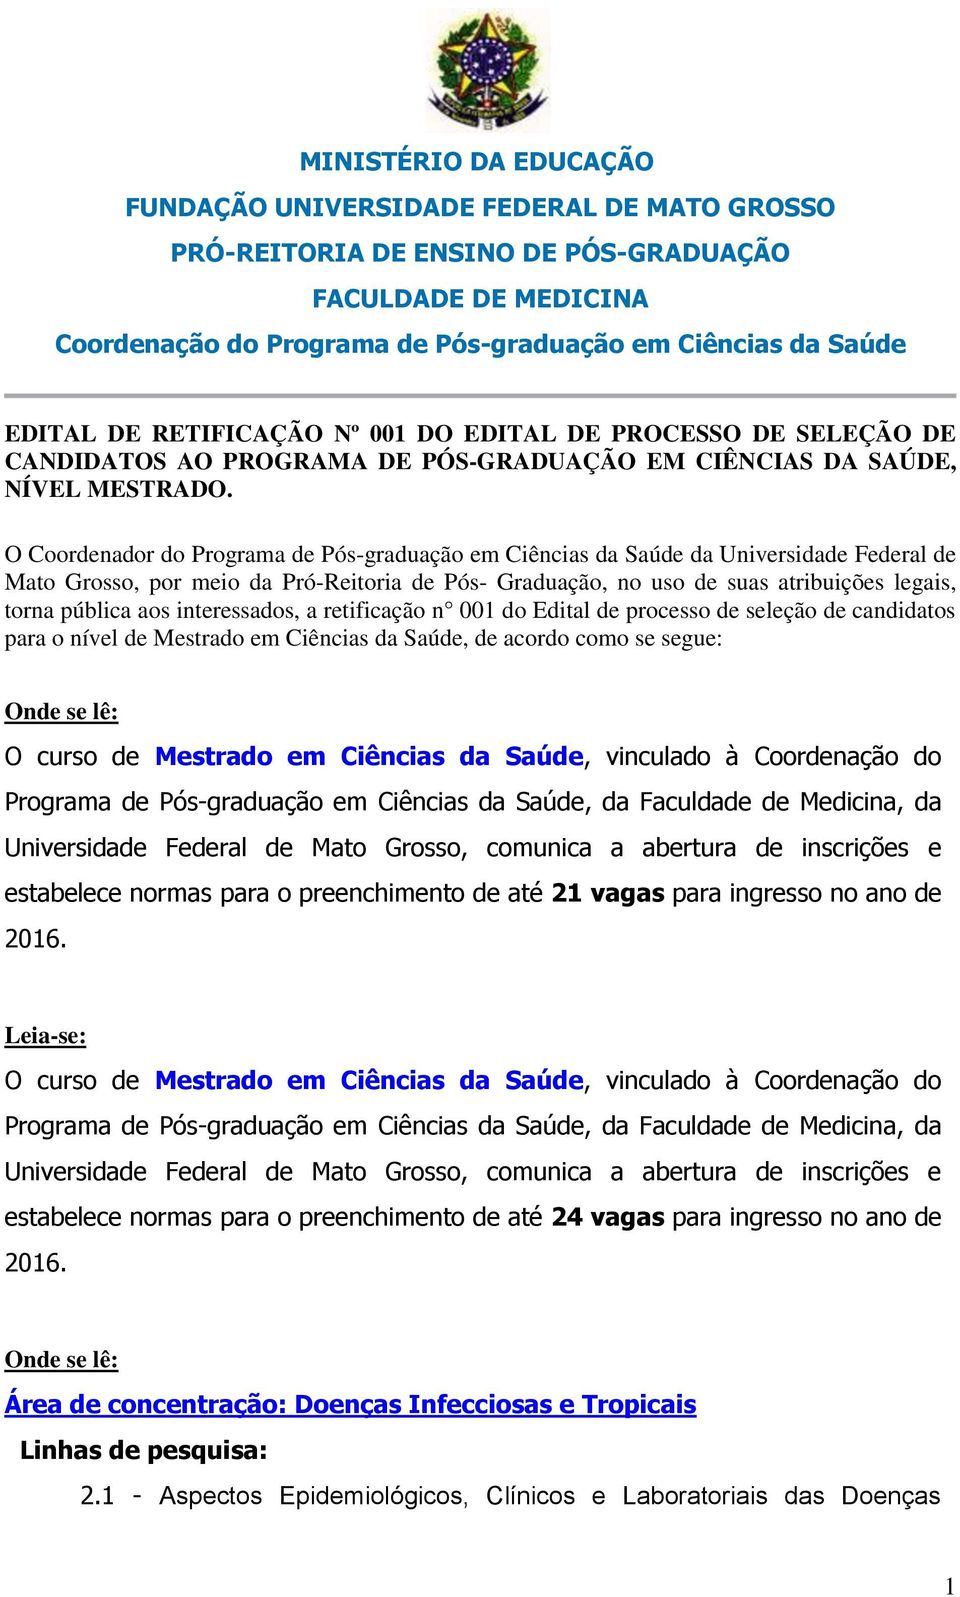 O Coordenador do Programa de Pós-graduação em Ciências da Saúde da Universidade Federal de Mato Grosso, por meio da Pró-Reitoria de Pós- Graduação, no uso de suas atribuições legais, torna pública